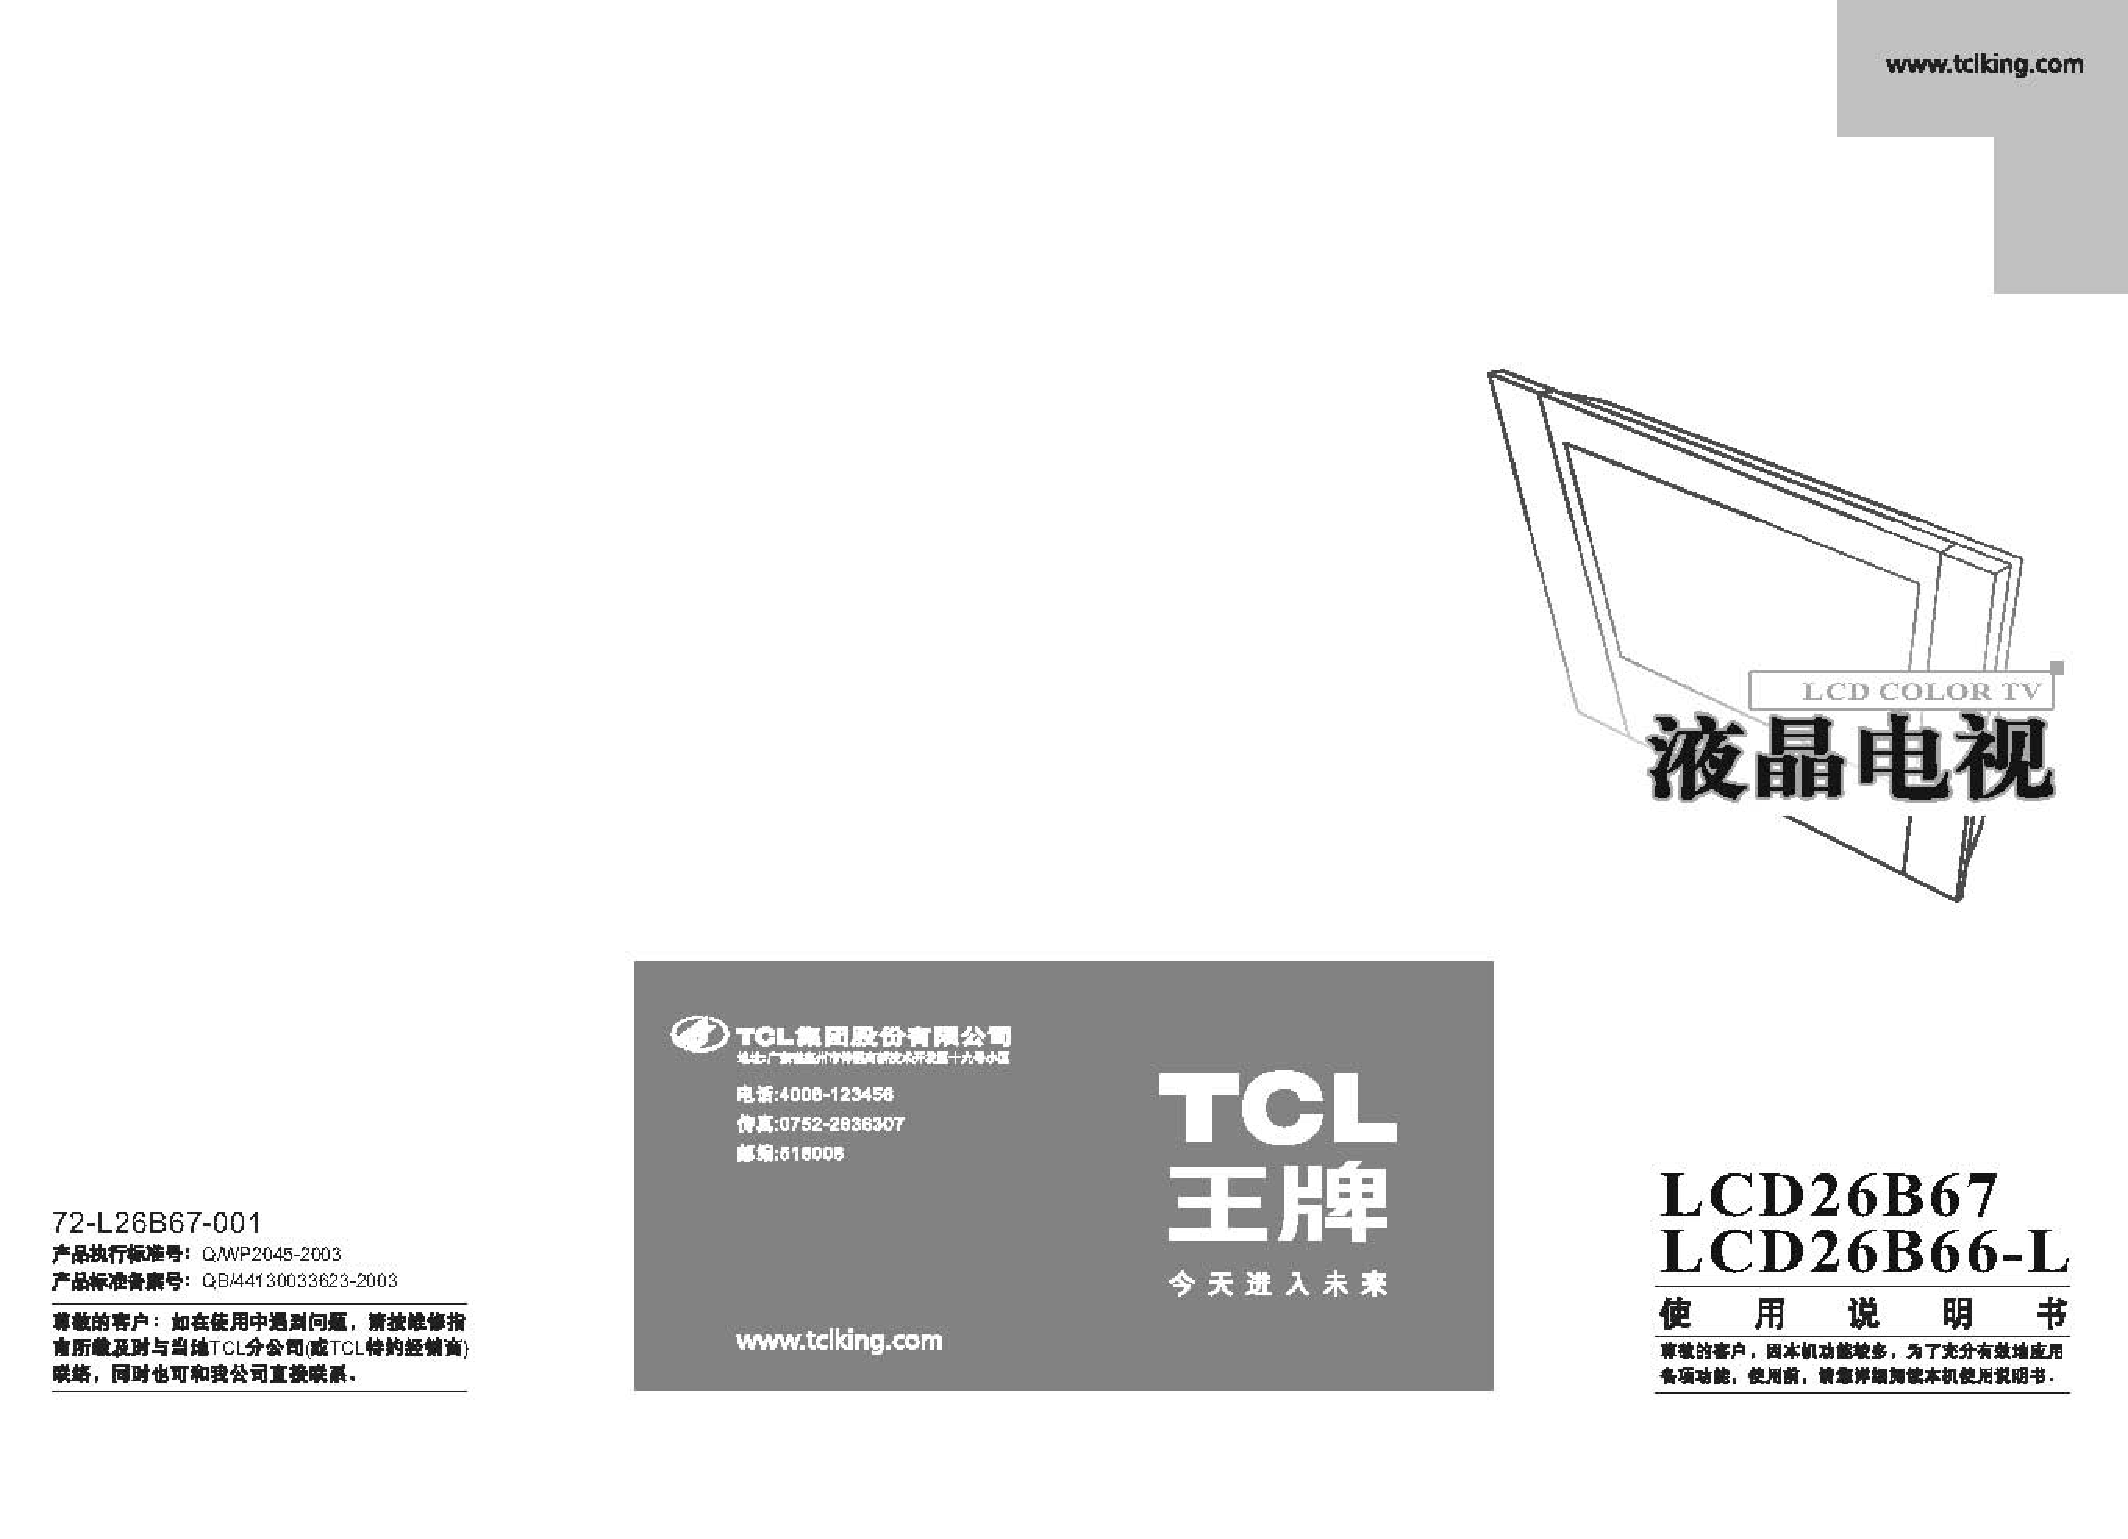 TCL LCD26B66-L 使用说明书 封面